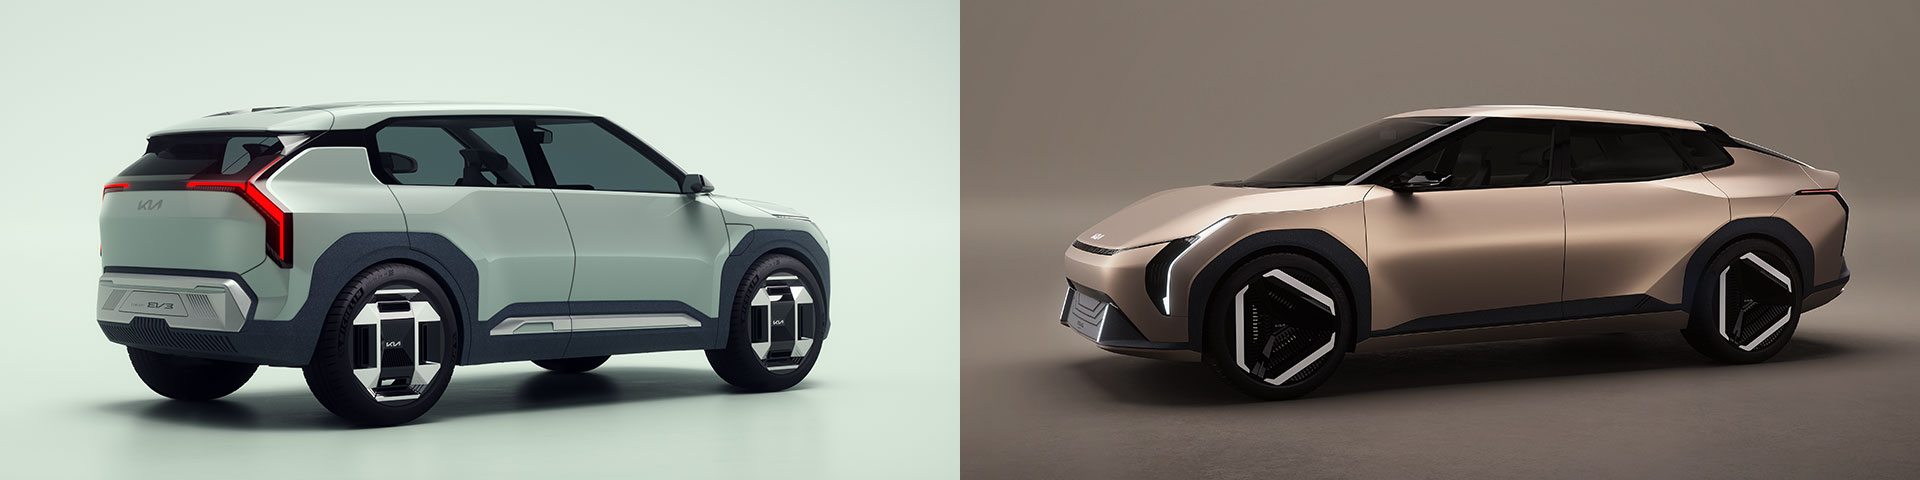 Kia EV3 Concept & EV4 Concept, Seitenansichten, dekorativ